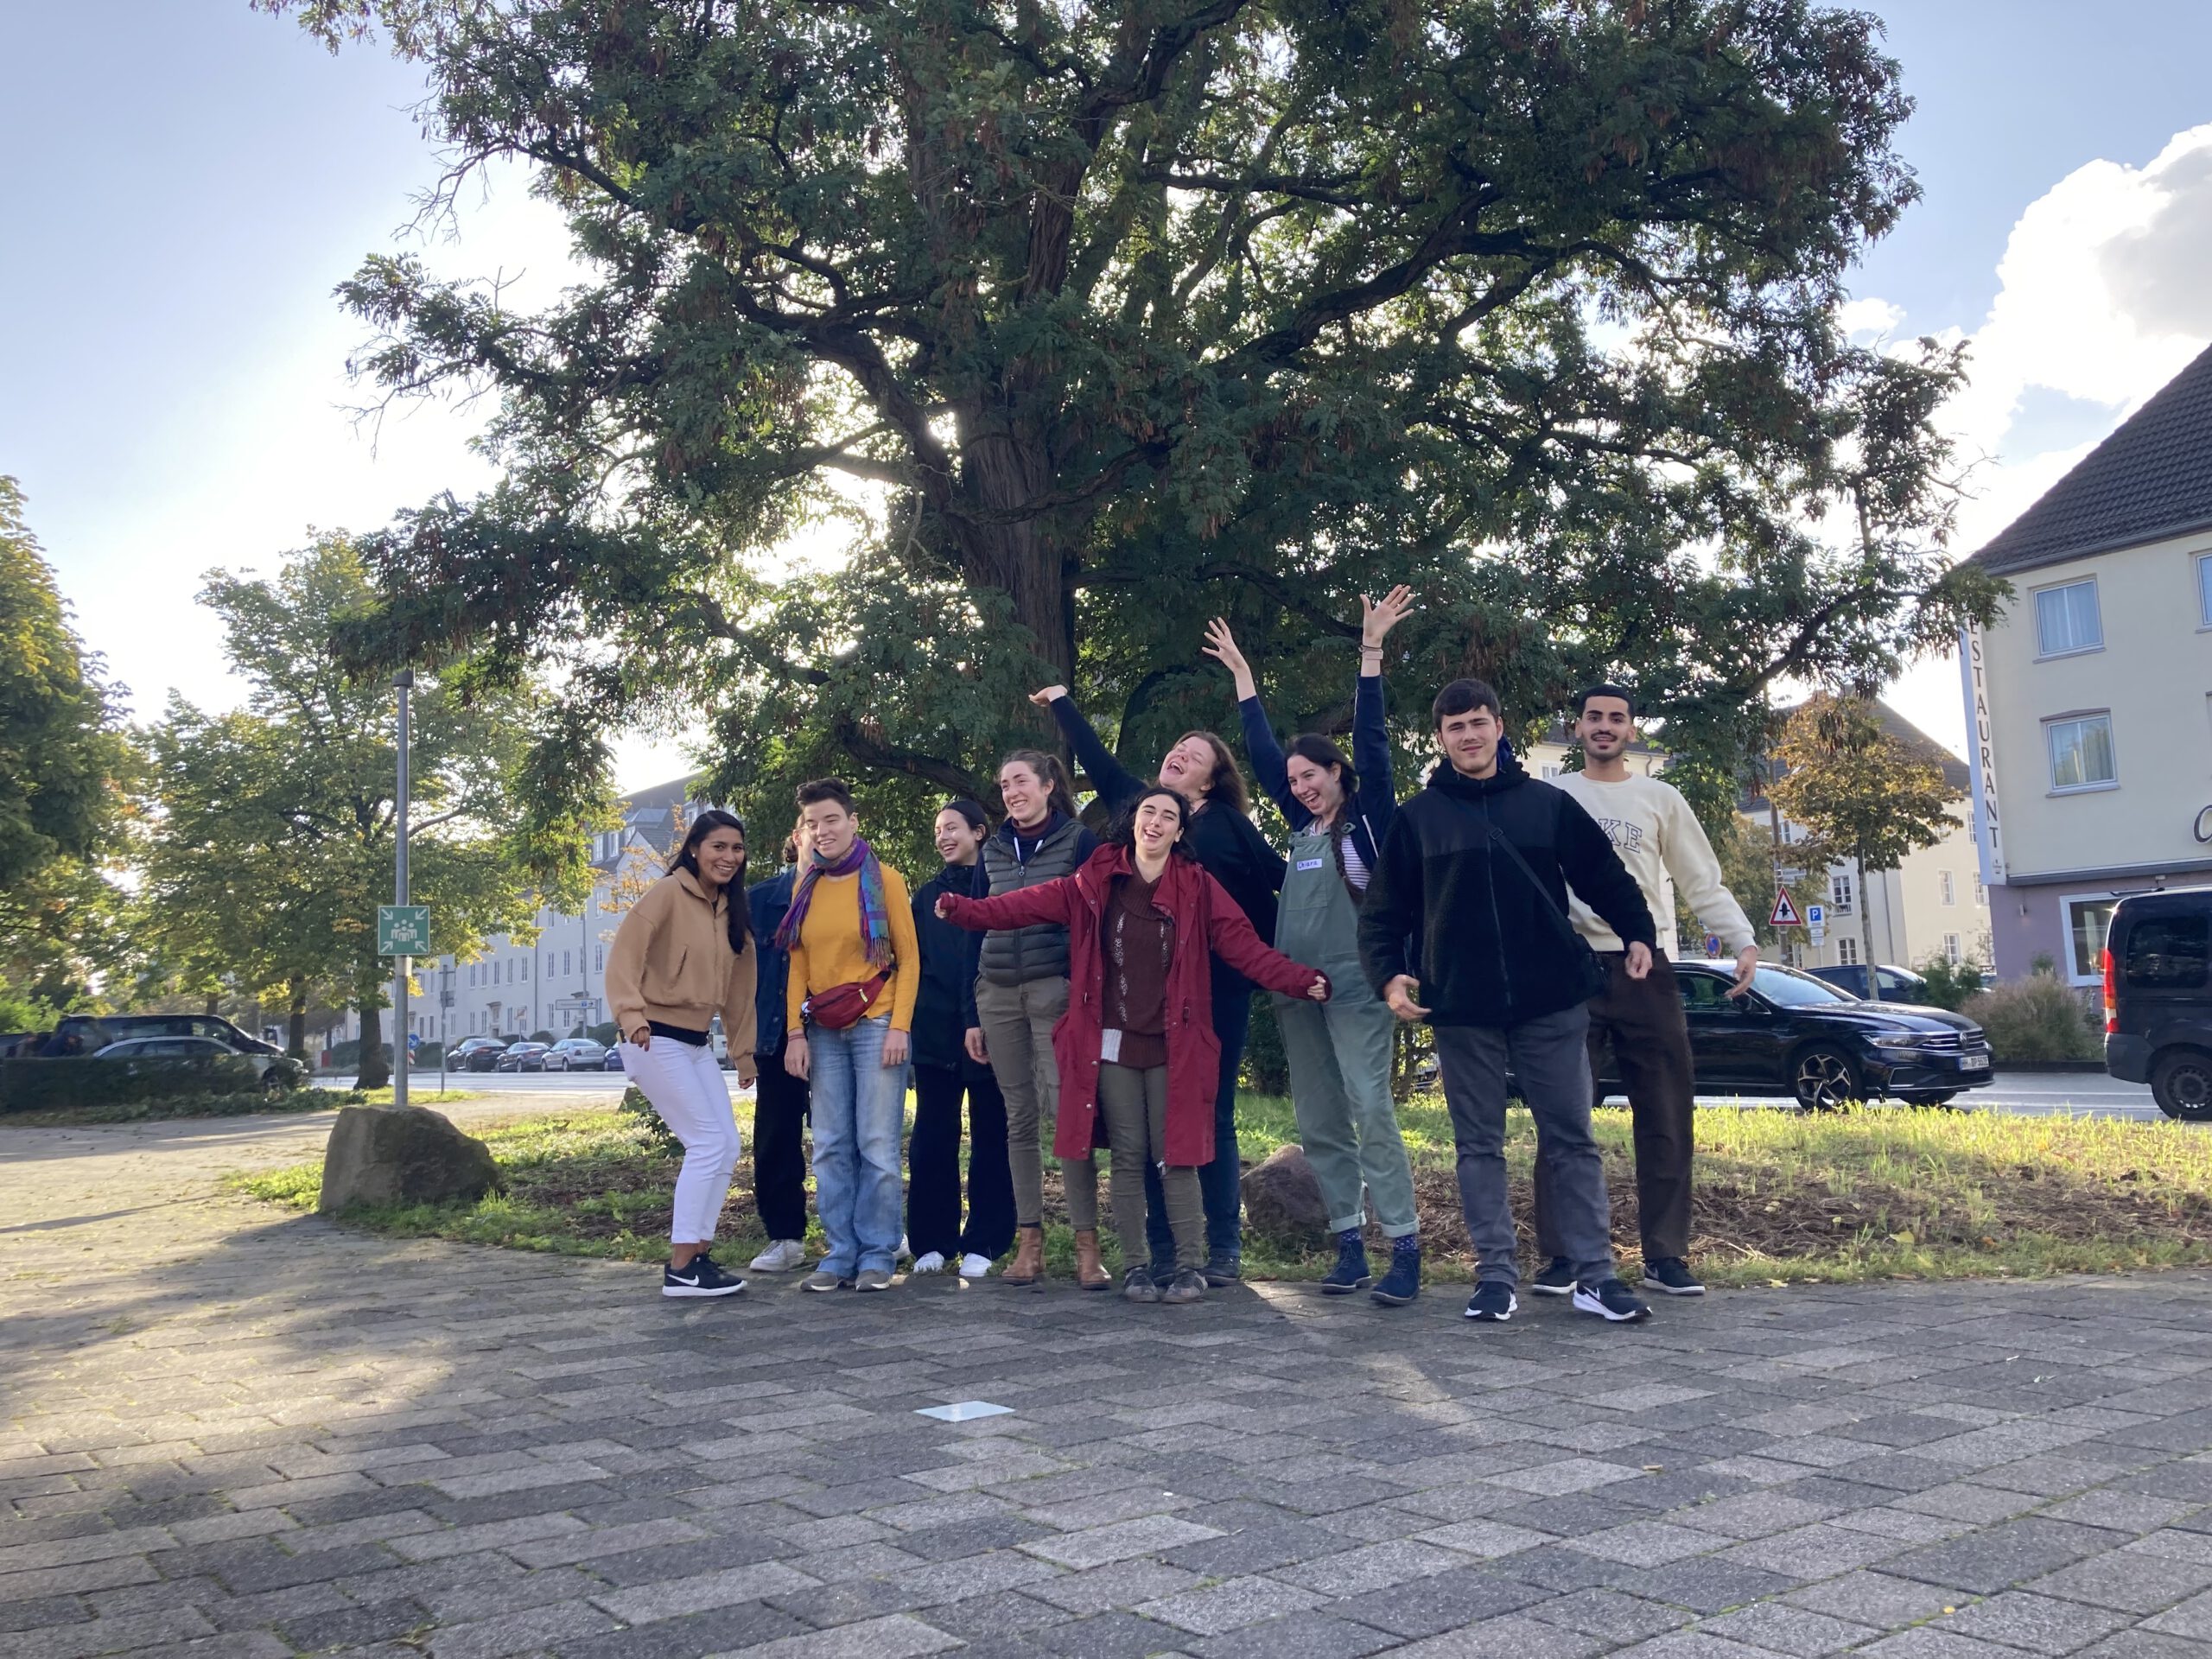 Das Bild zeigt eine Gruppe junger Menschen vor einem Baum.